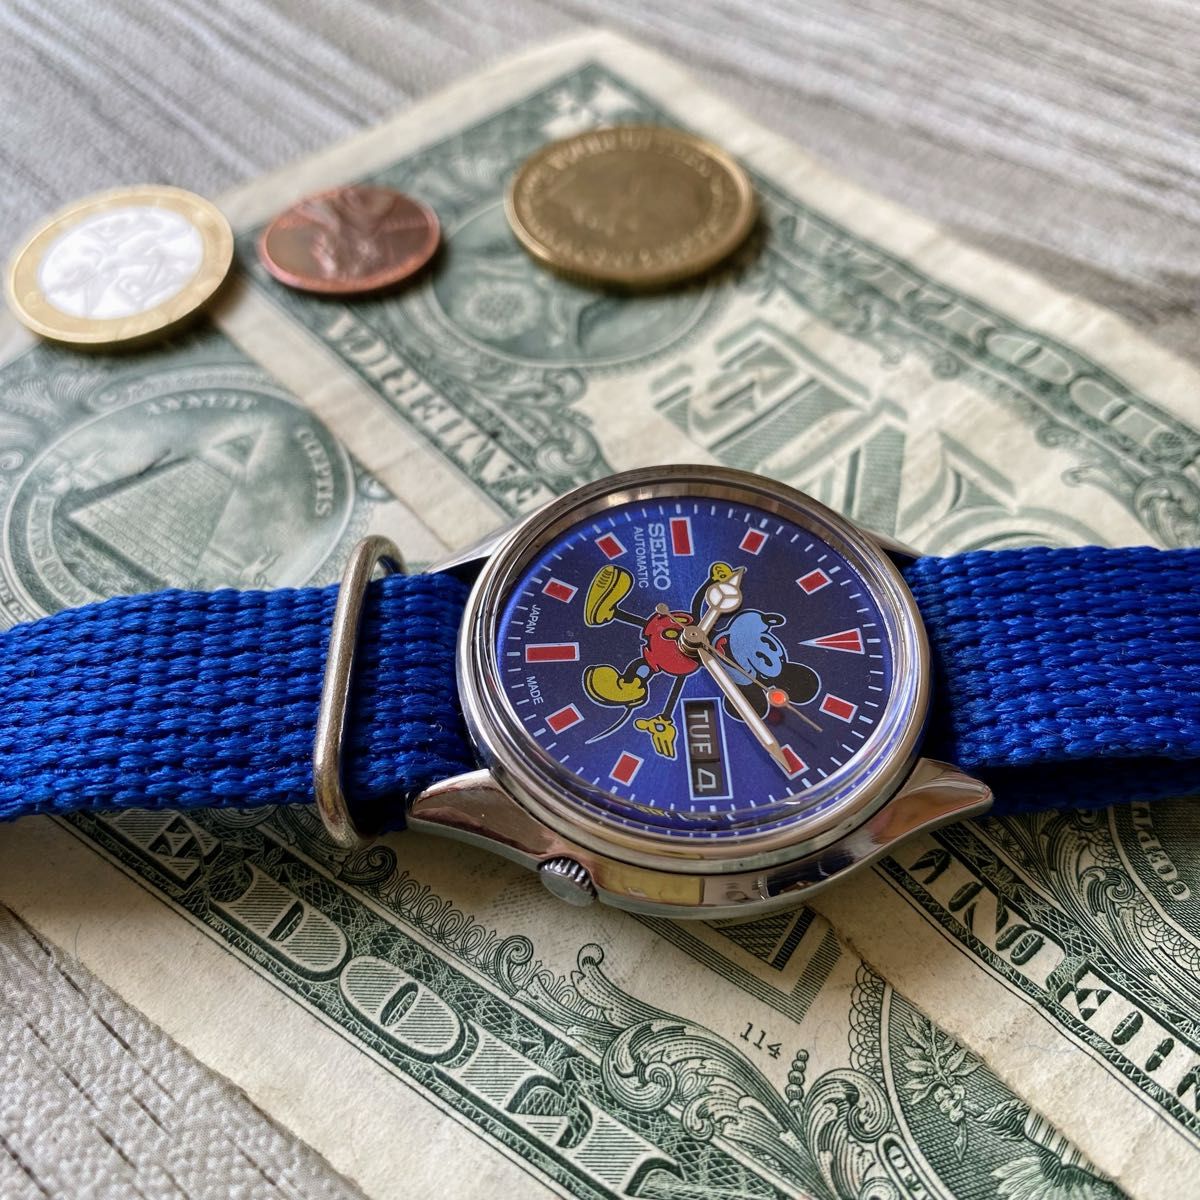 【レトロミッキー☆】セイコー メンズ腕時計 ブルー 自動巻き ヴィンテージ